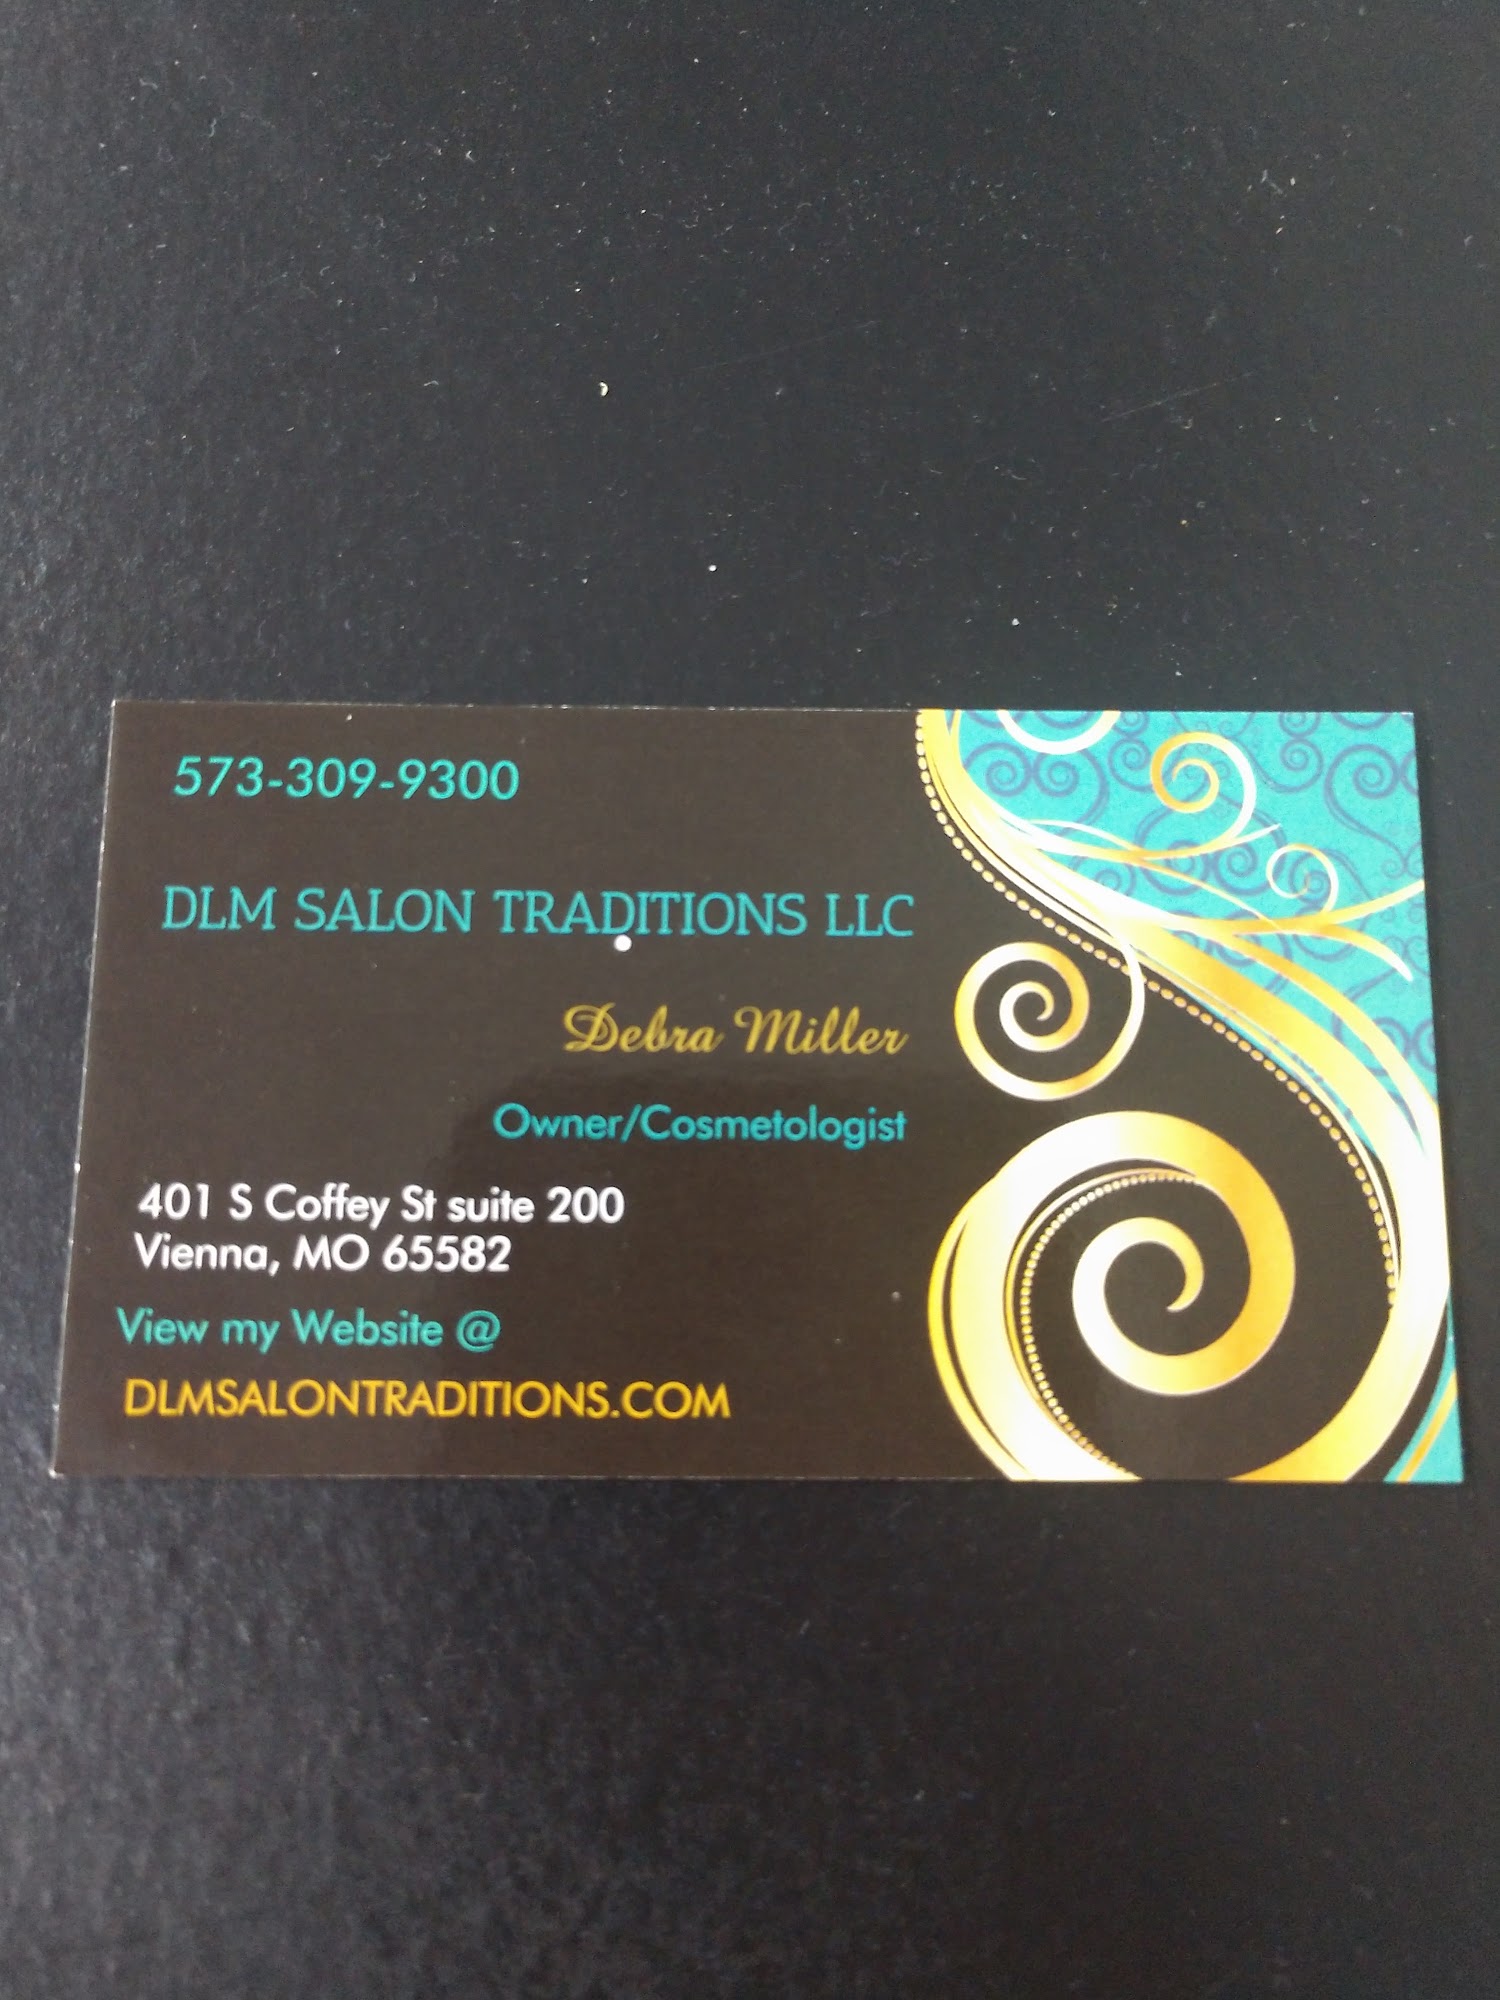 DLM Salon Traditions LLC 401 S Coffey St, Vienna Missouri 65582